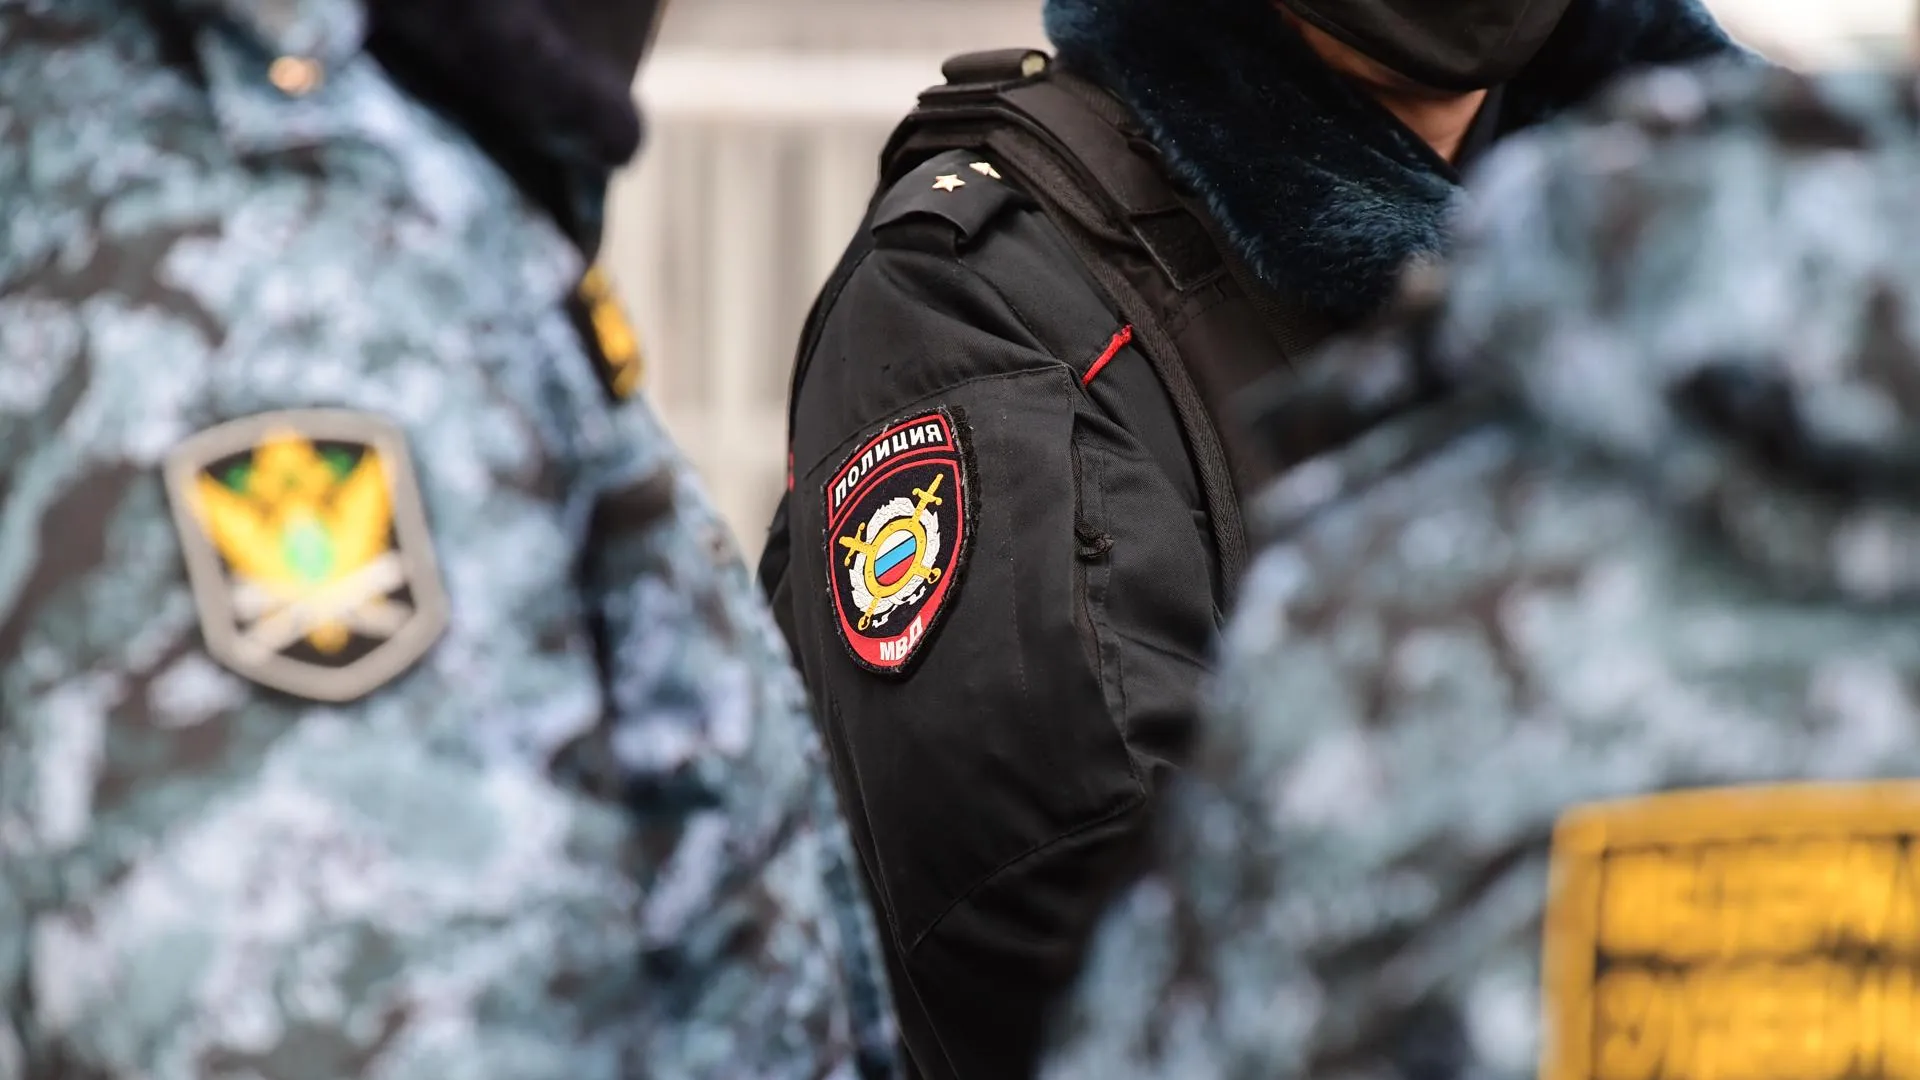 SHOT: задержан житель Подмосковья, планировавший поджог военной части